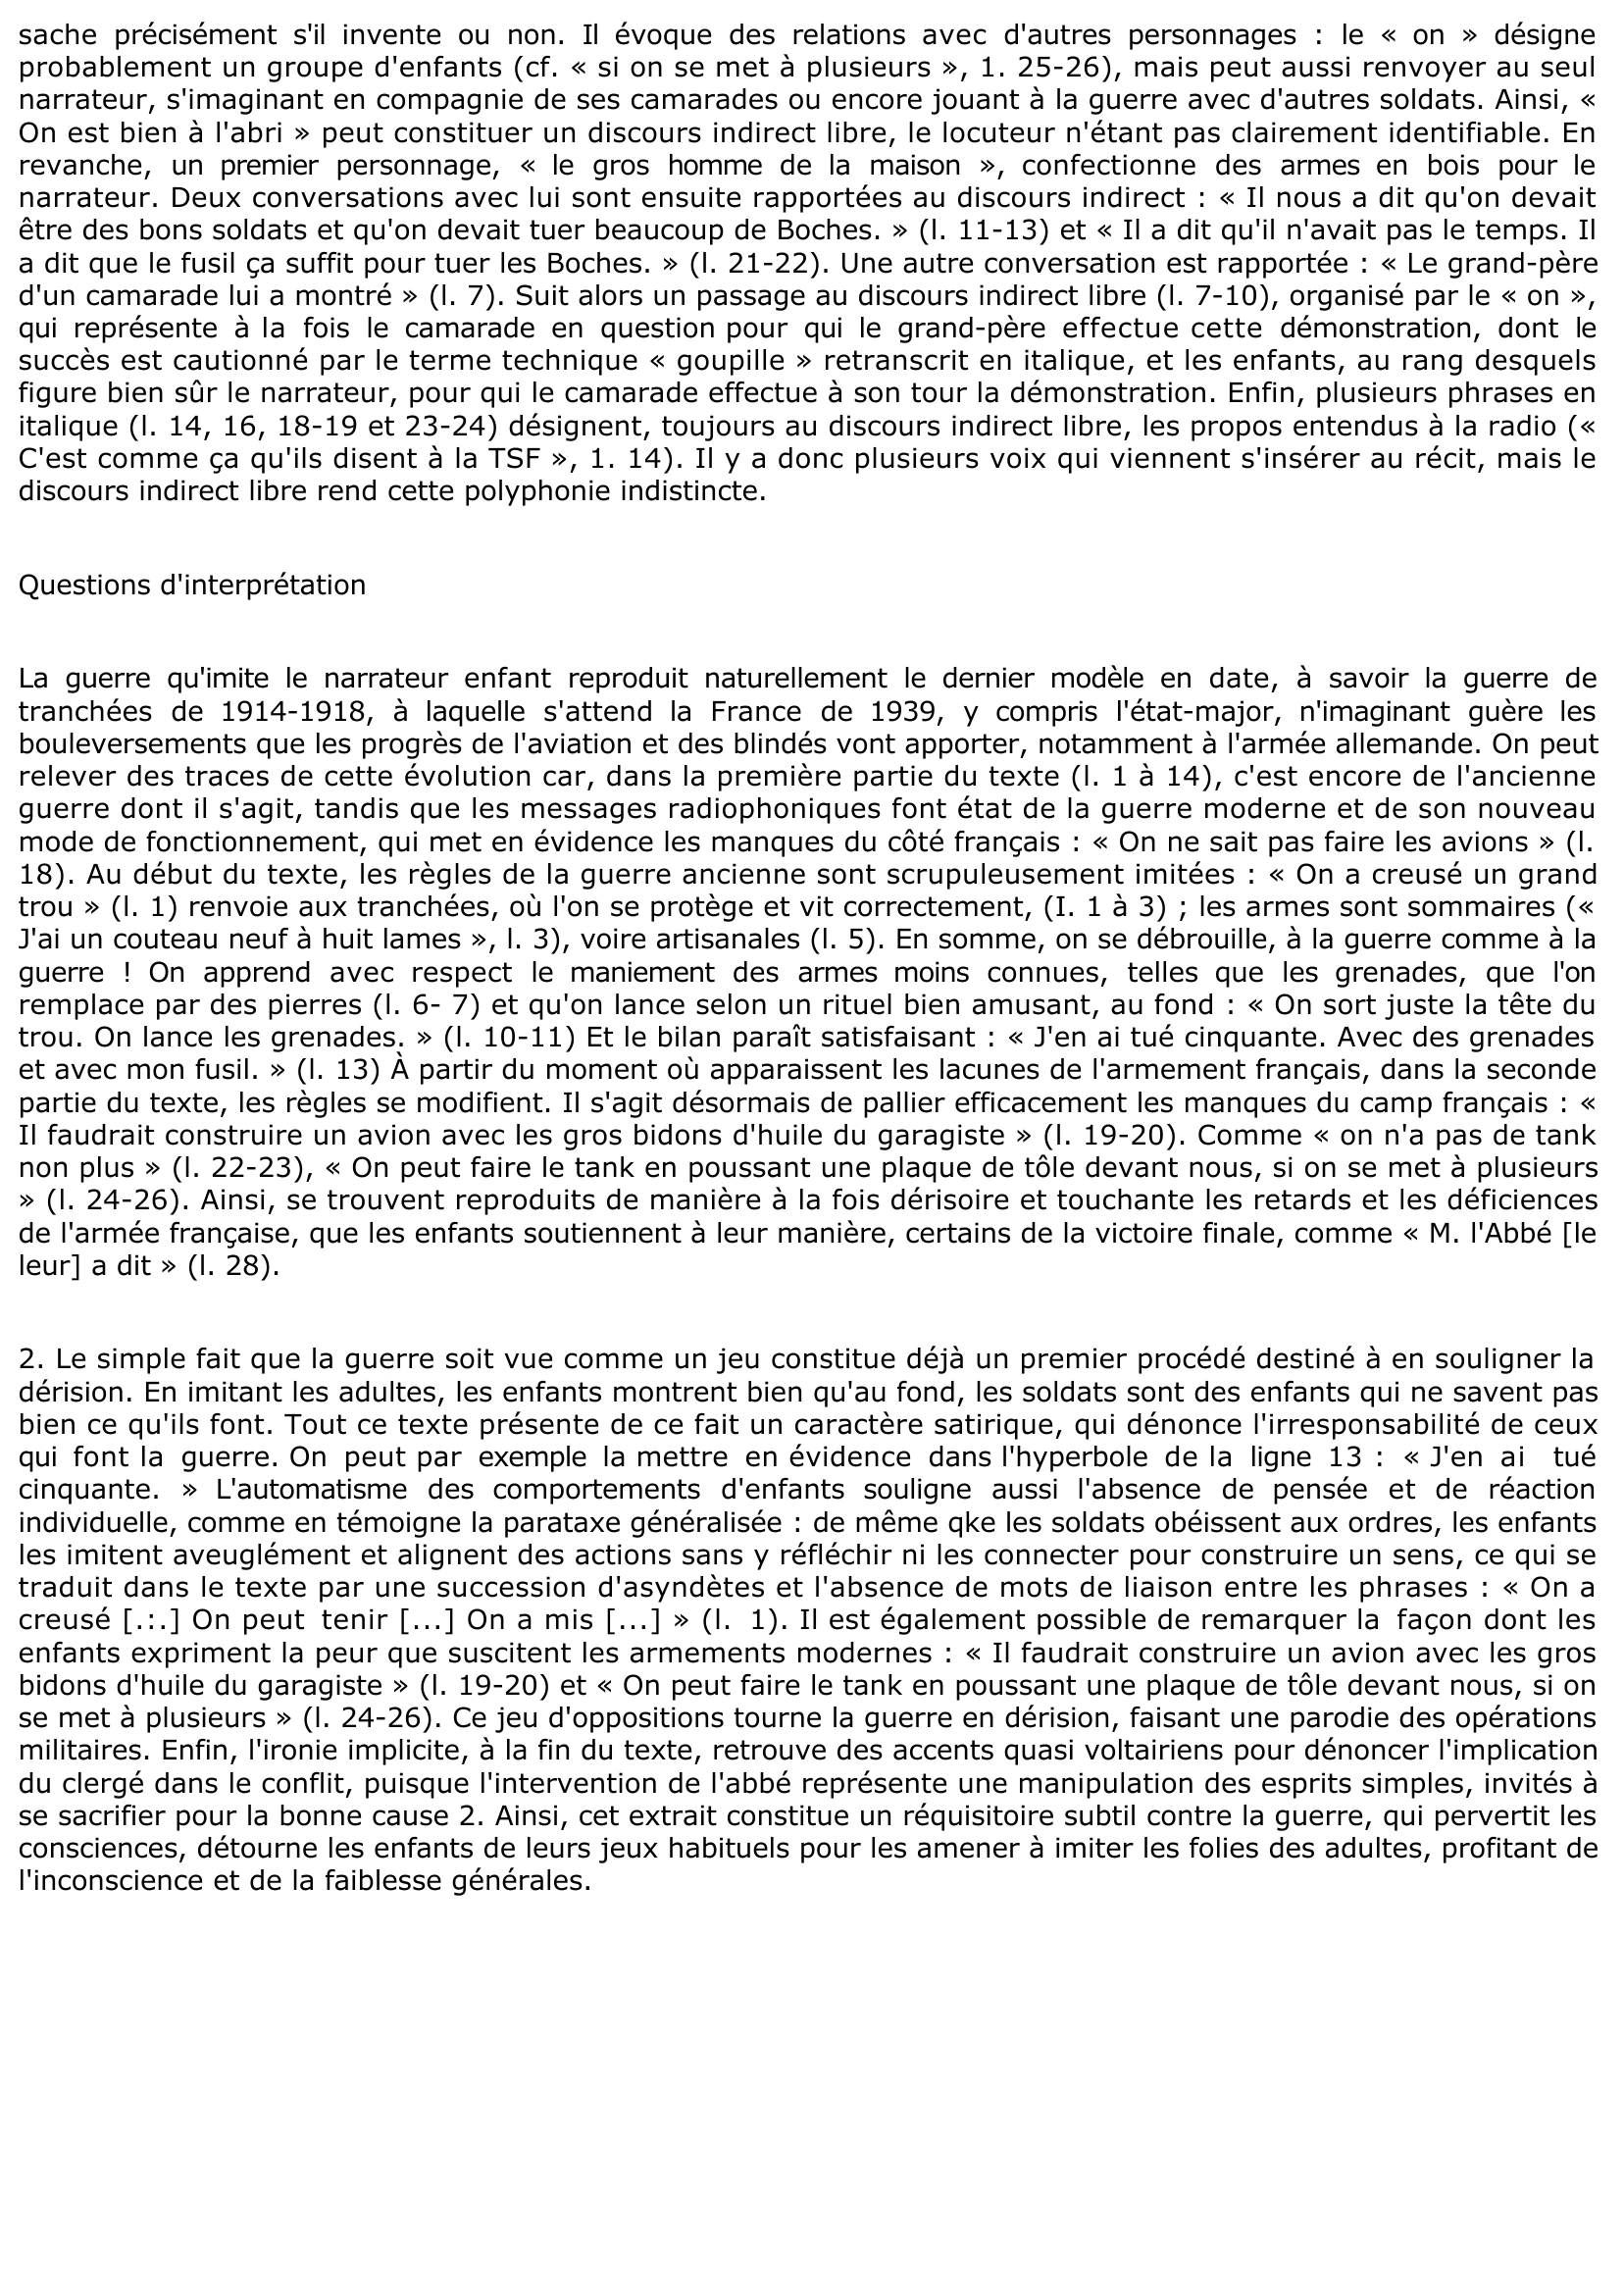 Prévisualisation du document Louis CALAFERTE: C'est la guerre, L'arpenteur, Gallimard, p. 40-41